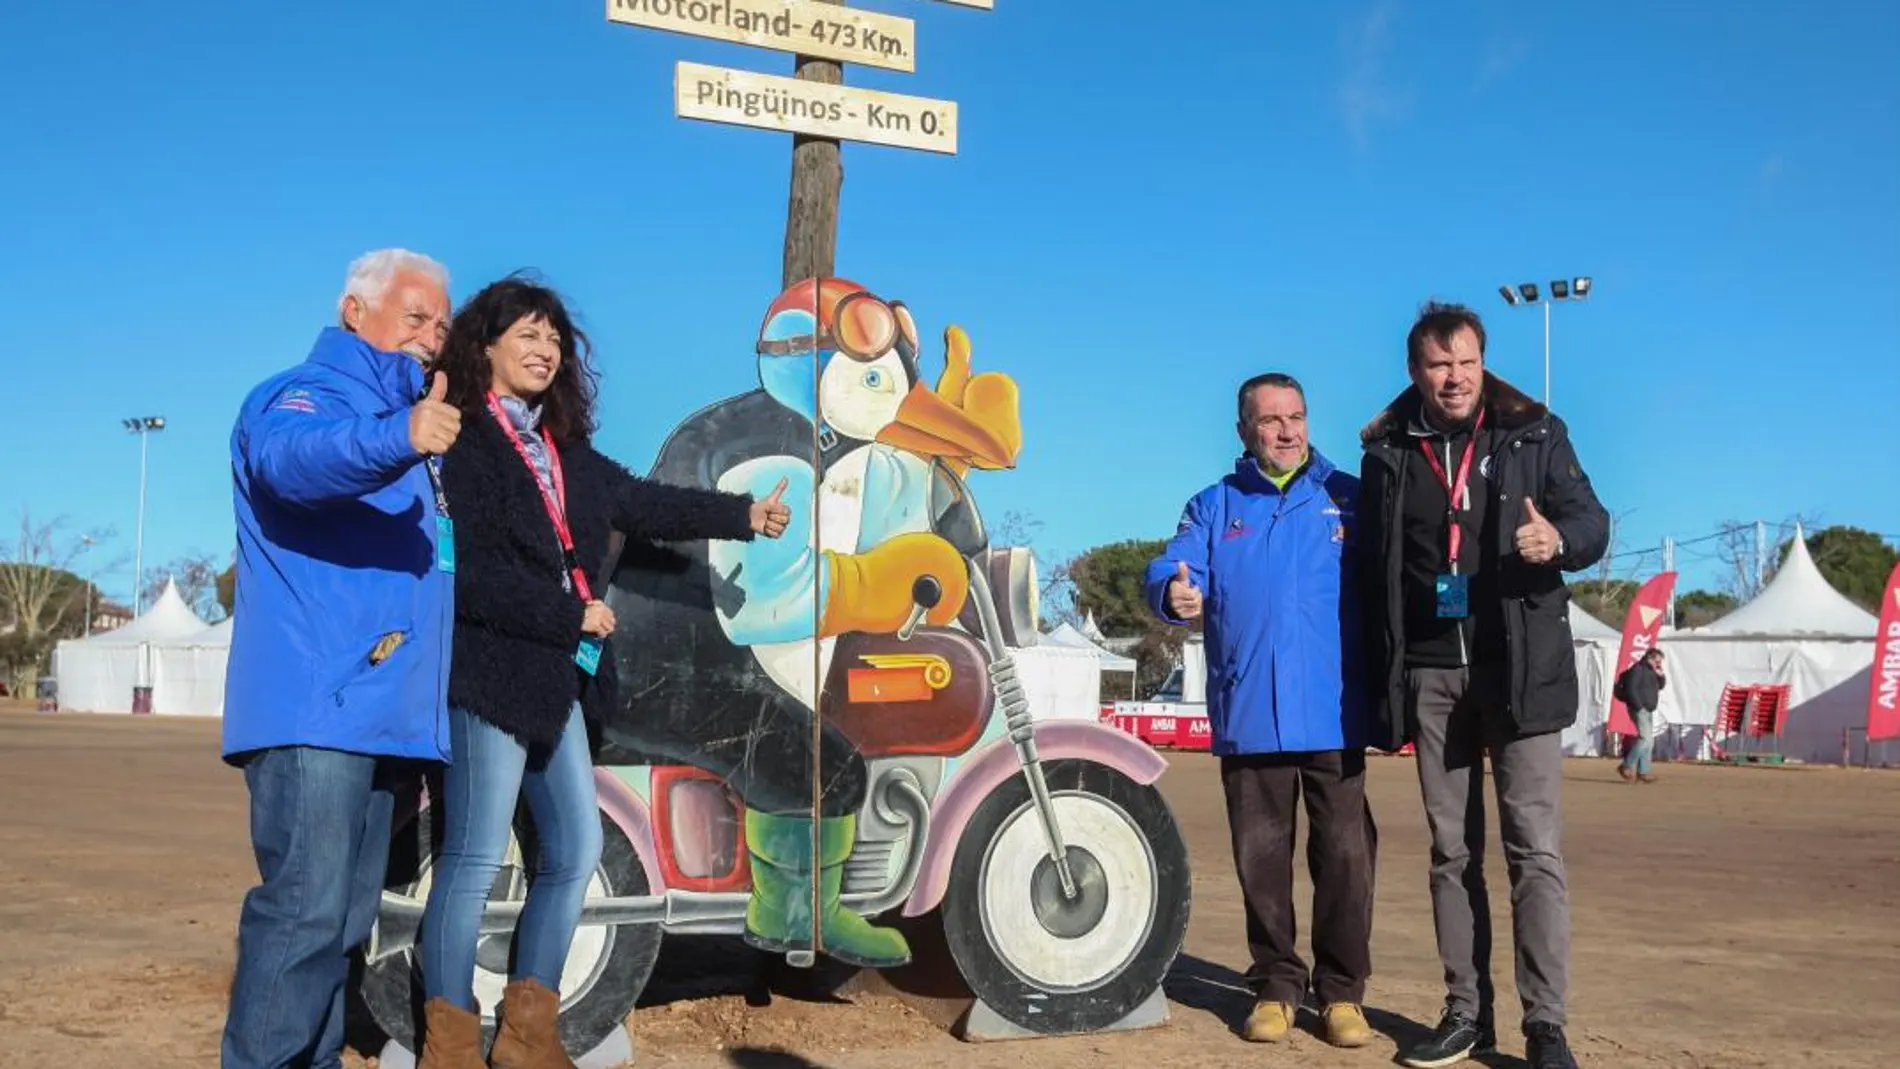 El alcalde de Valladolid, Öscar Puente, y la concejal de Cultura y Turismo, Ana Redondo, junto con los organizadores de Pingüinos